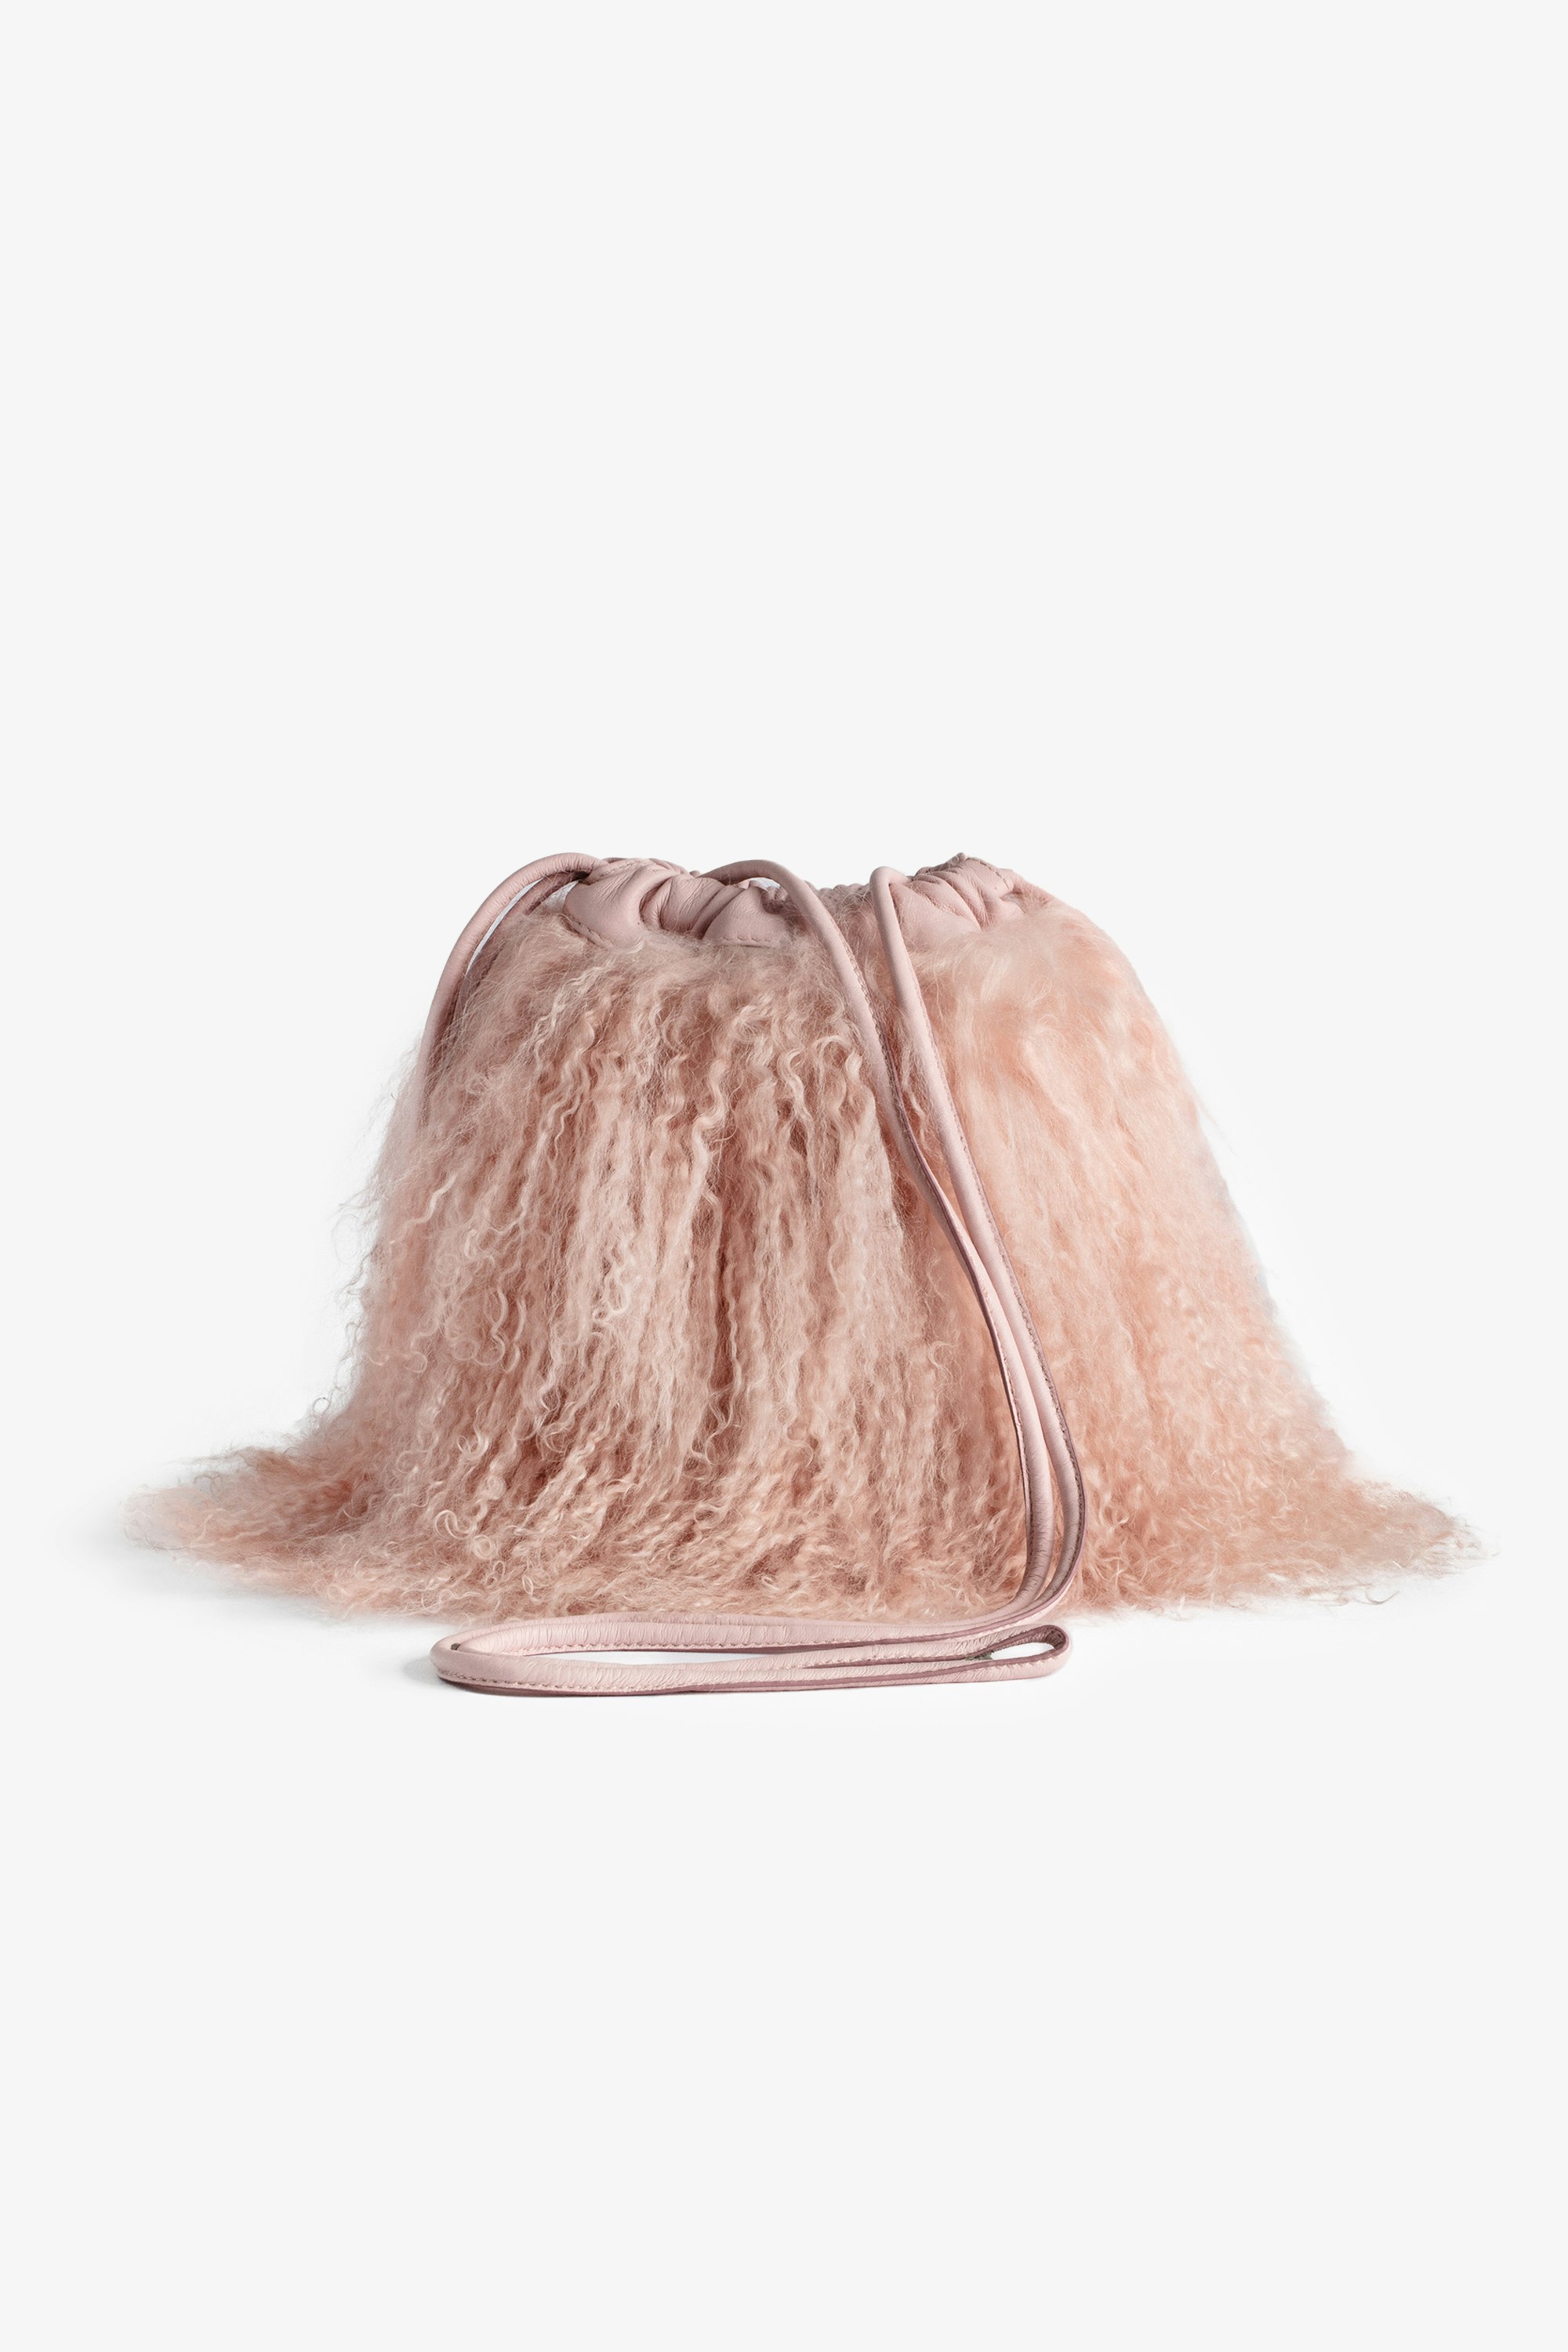 Borsa Rock To Go Frenzy shearling - Piccola borsa a secchiello in pelle rosa shearling con coulisse e tracolla da donna.